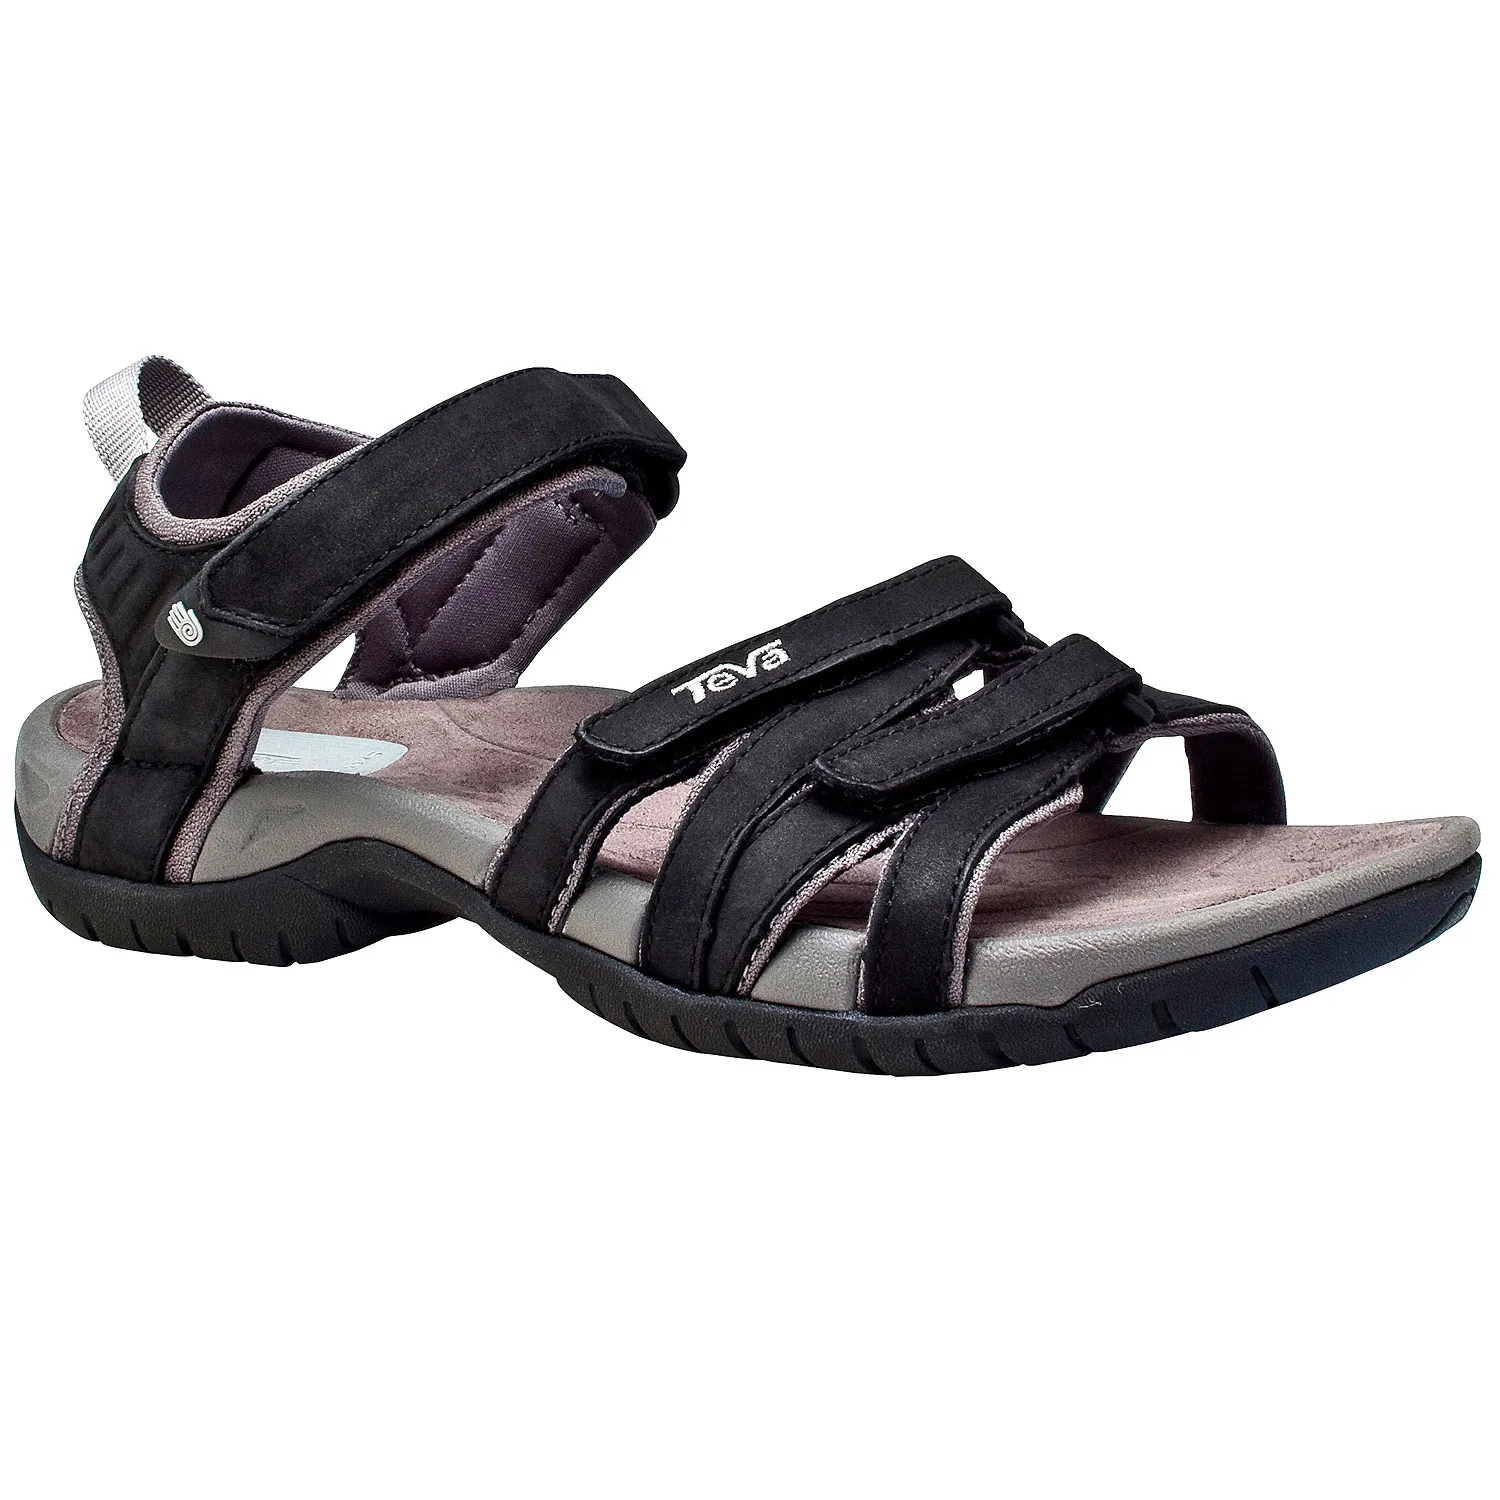 Køb sandaler her - sommer friluftsliv hos Friluftsland